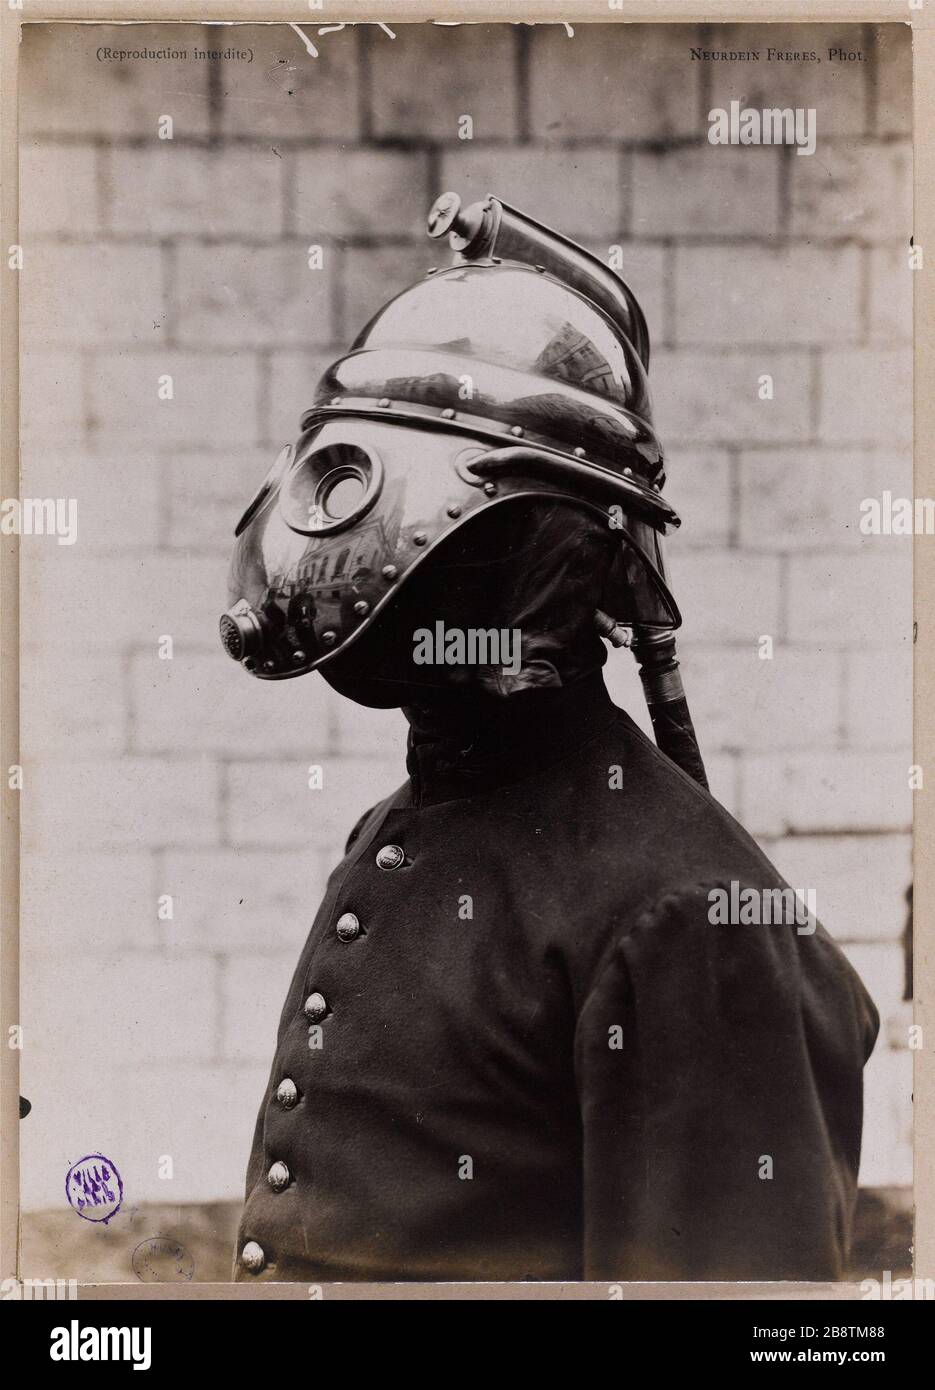 Firefighter with his gas mask, Paris. Pompier avec son masque à gaz, Paris. Photographie de Neurdein Frères. Tirage gélatino-argentique. 1895-1902. Paris, musée Carnavalet. Stock Photo